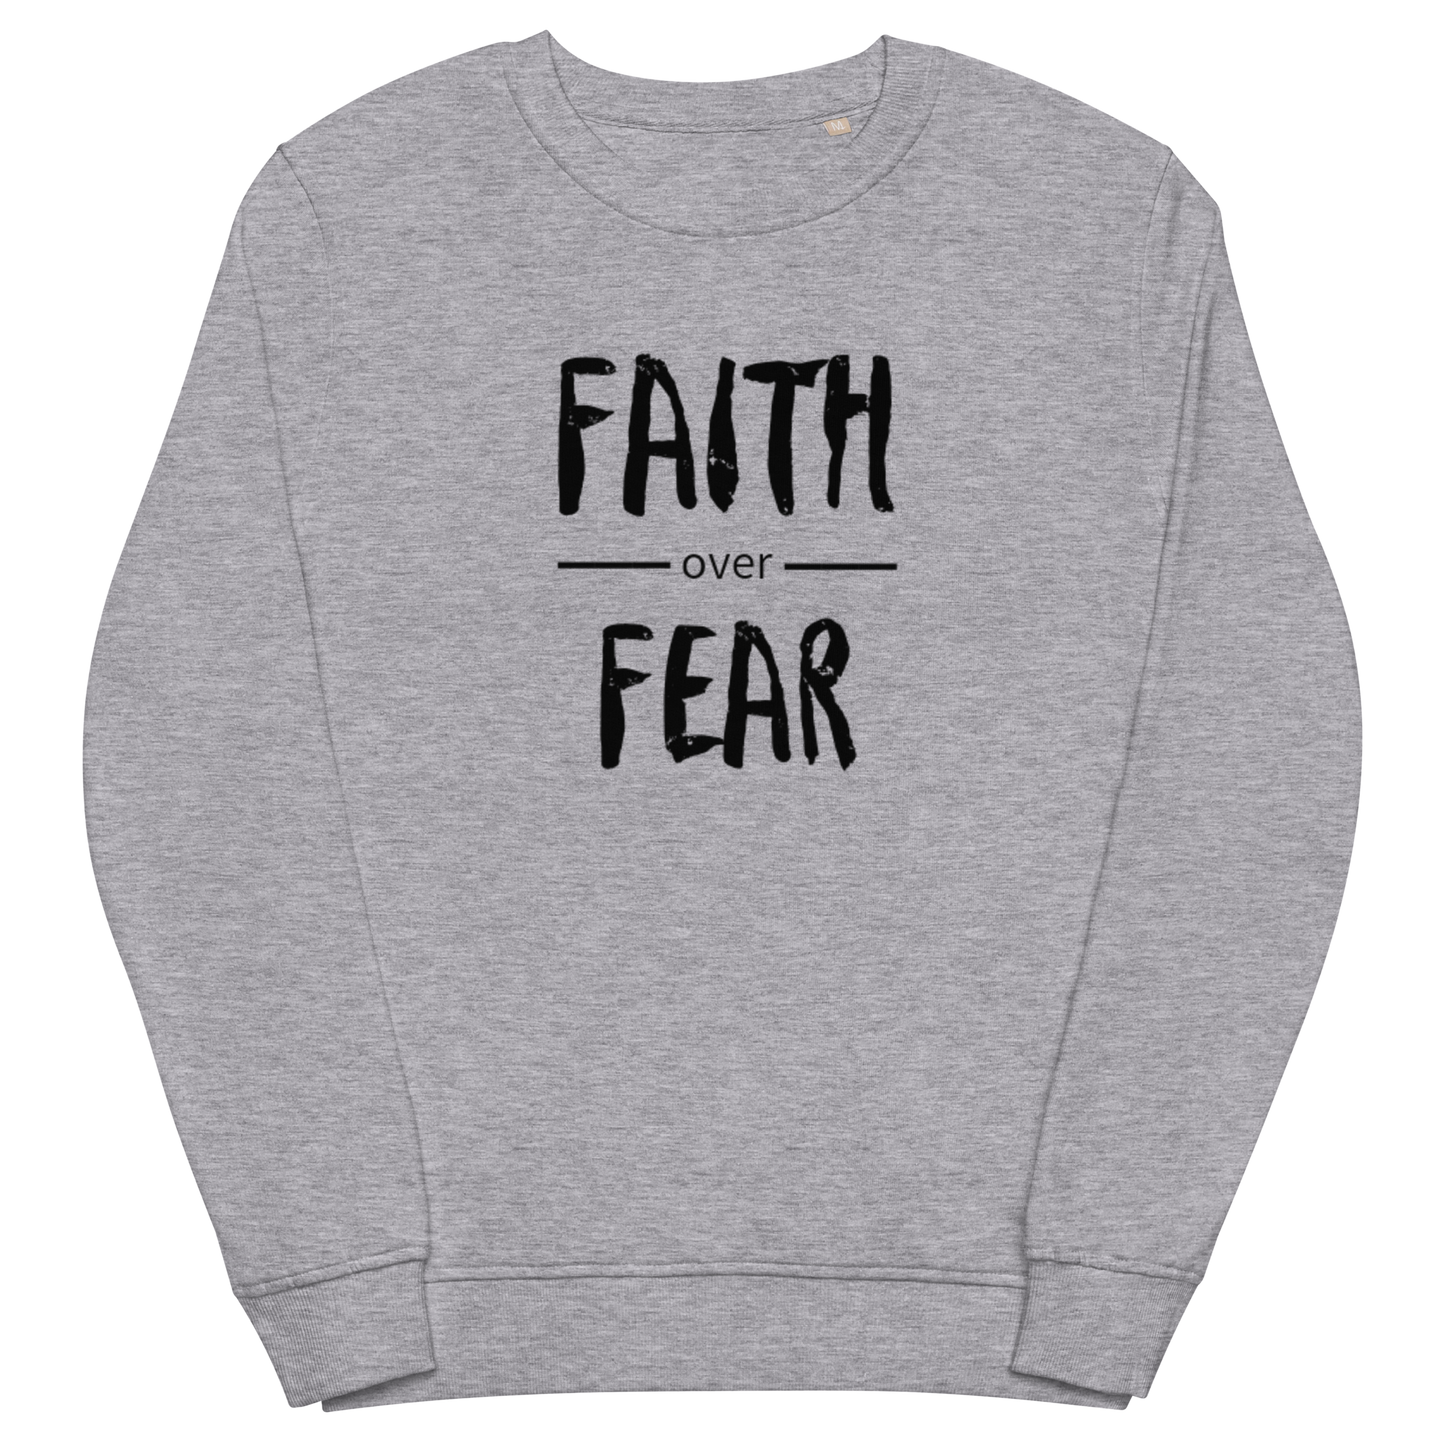 Faith Over Fear Sweatshirt with Black Text